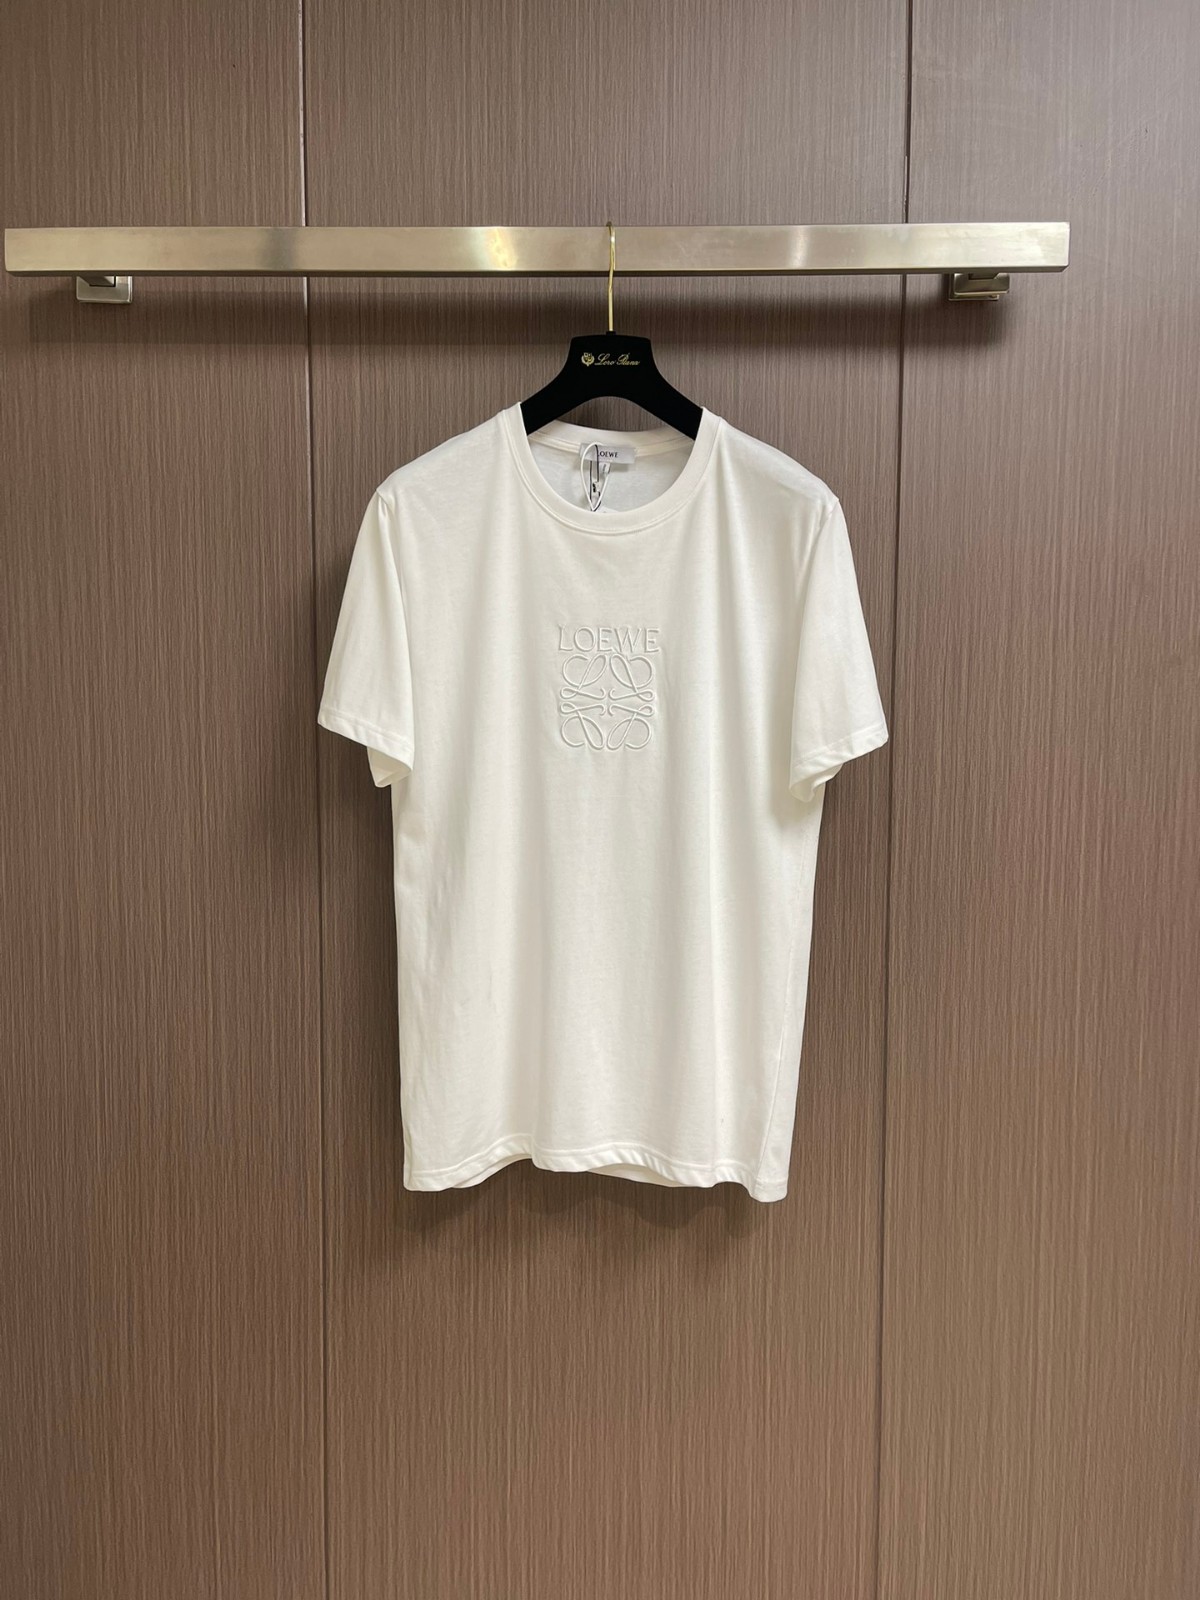 シンプル ロエベ Tシャツ 偽物 アナグラム 刺繍入り 半袖Tシャツ ホワイト